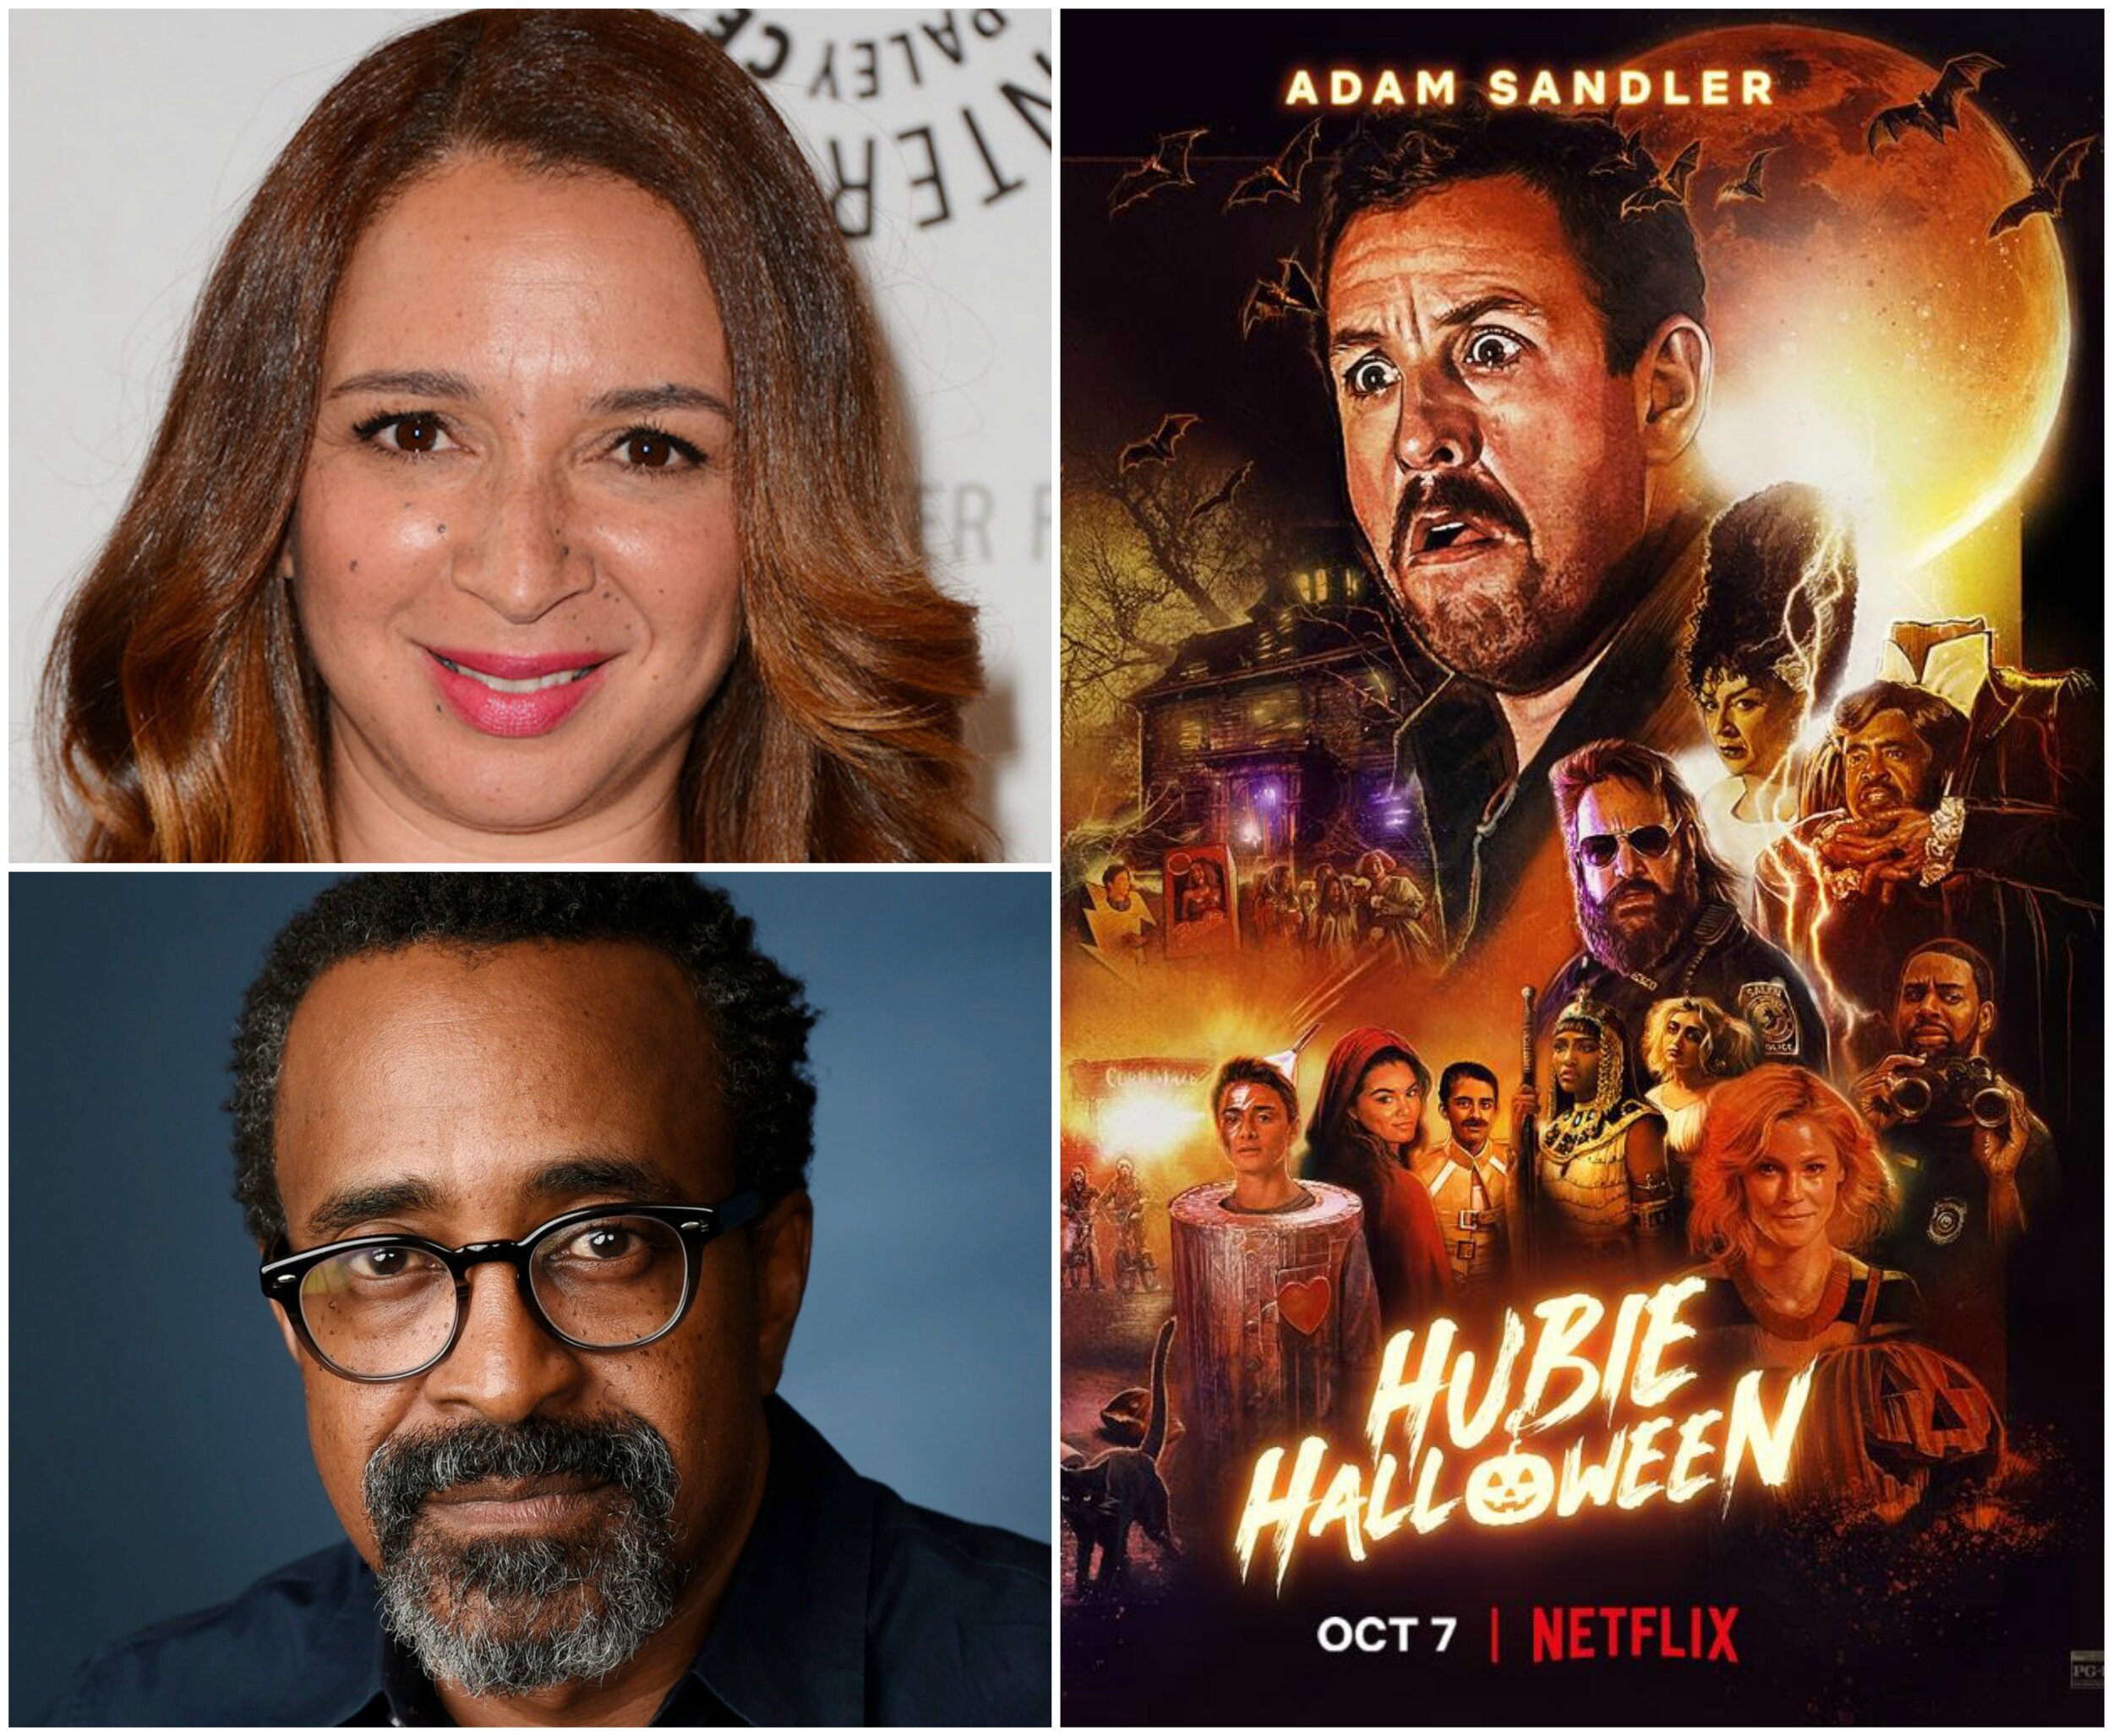 O Halloween do Hubie é o novo filme com Adam Sandler da Netflix